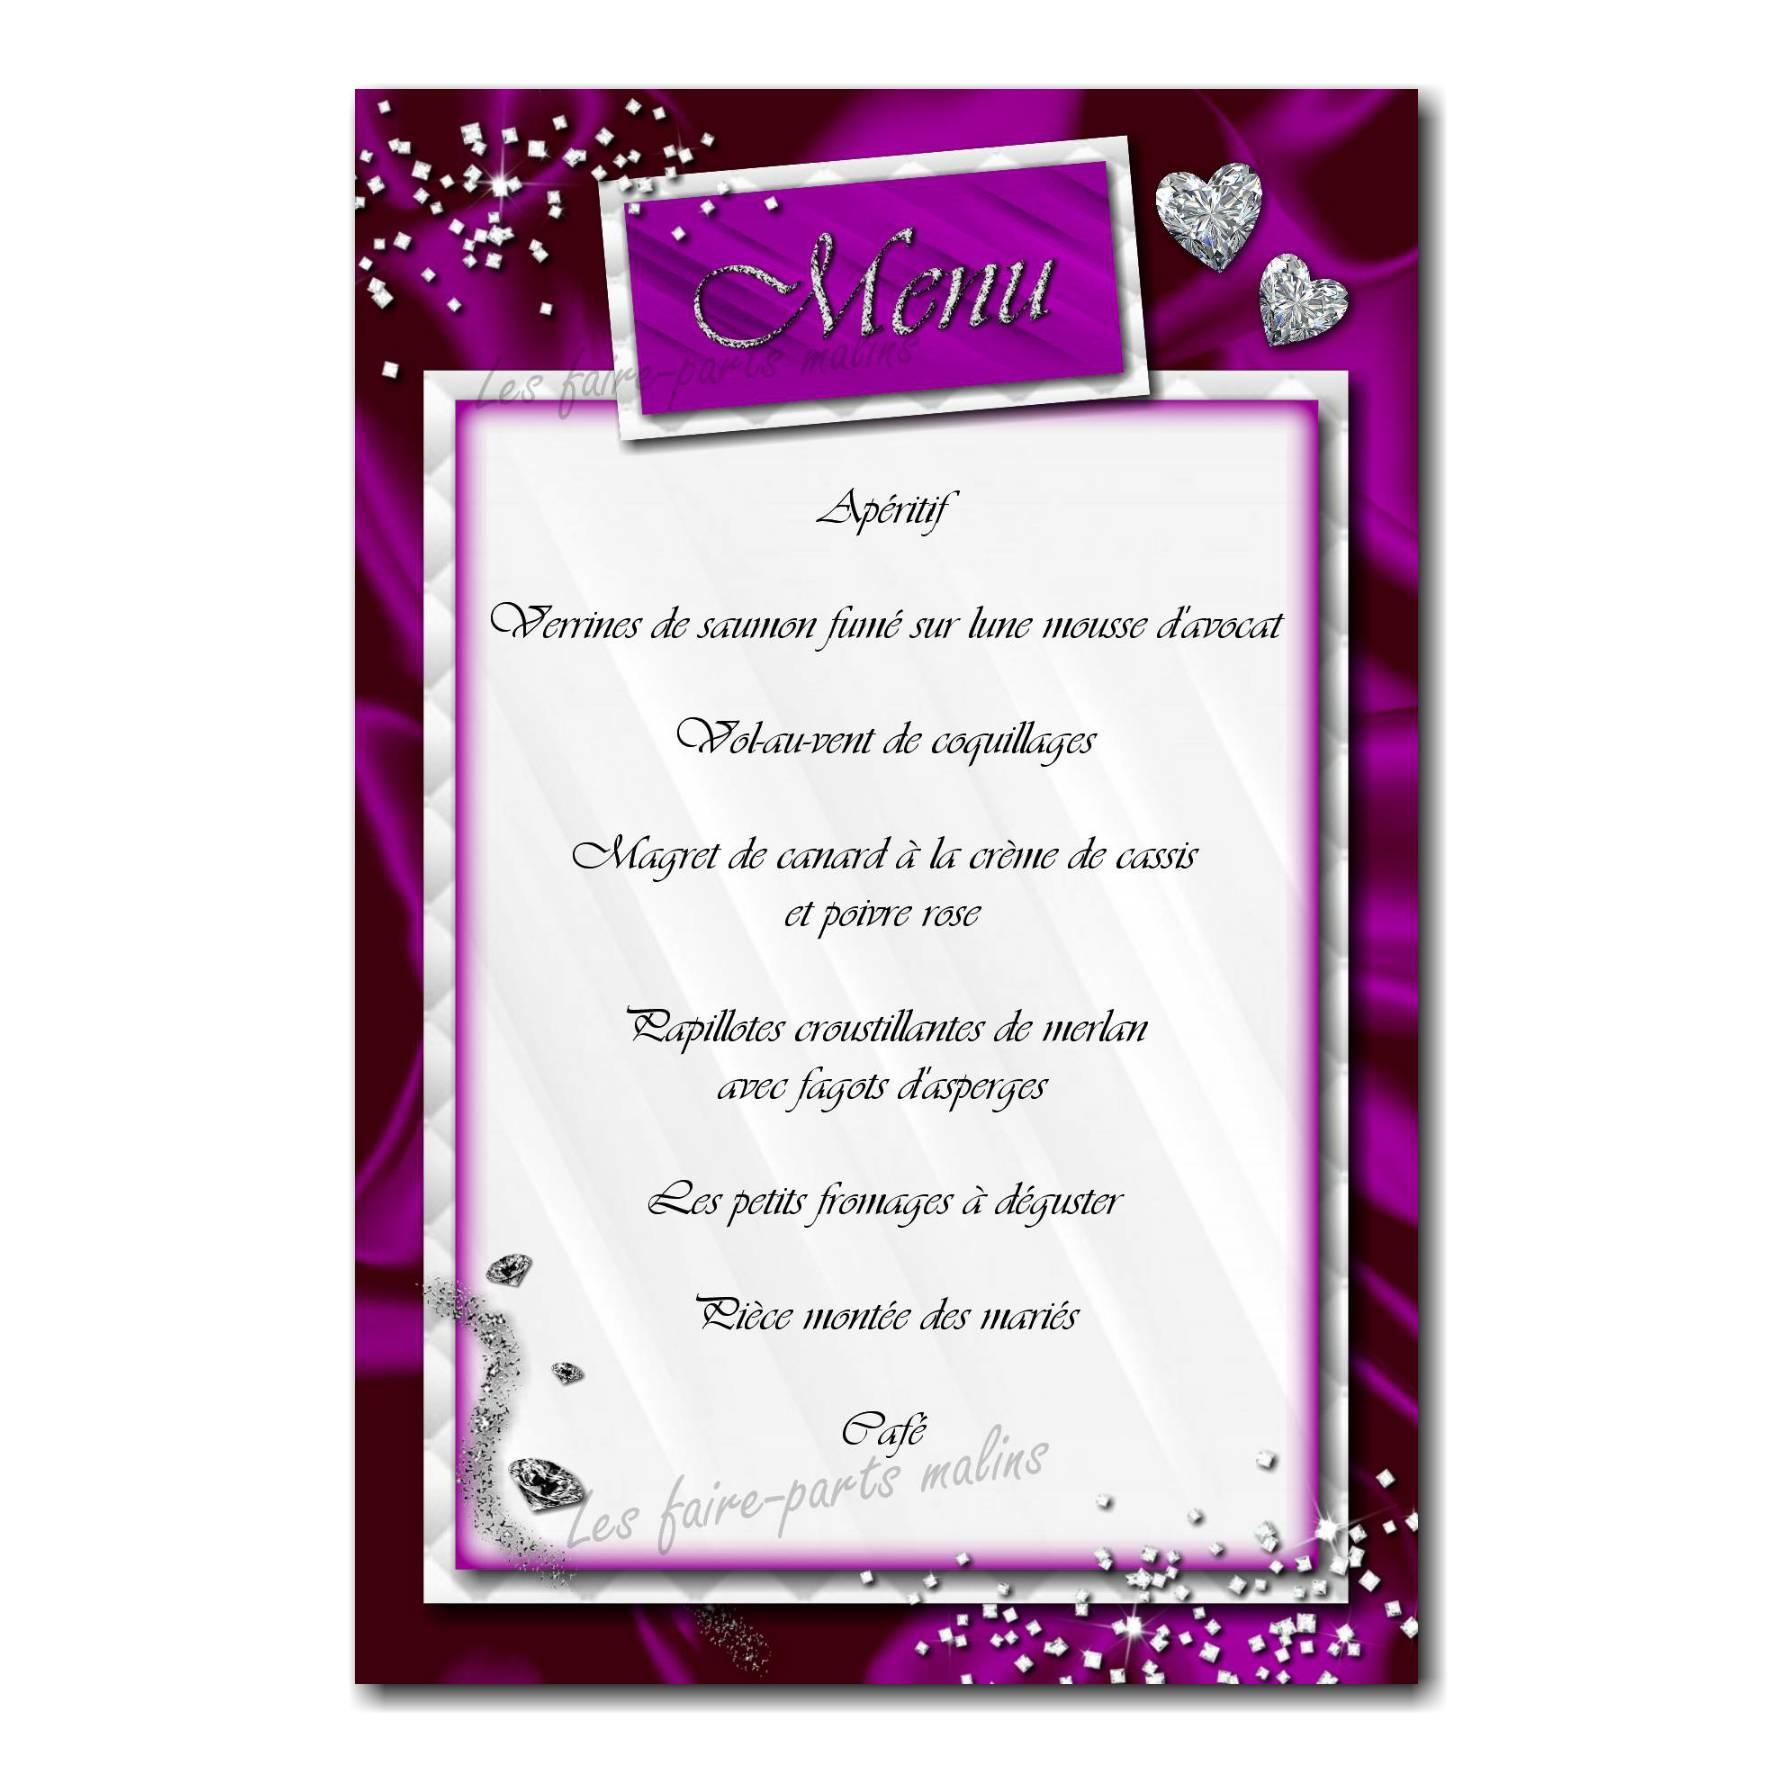 https://www.faire-part-malin-et-pas-cher.com/medias/images/40-mariage-menu-violet.jpg